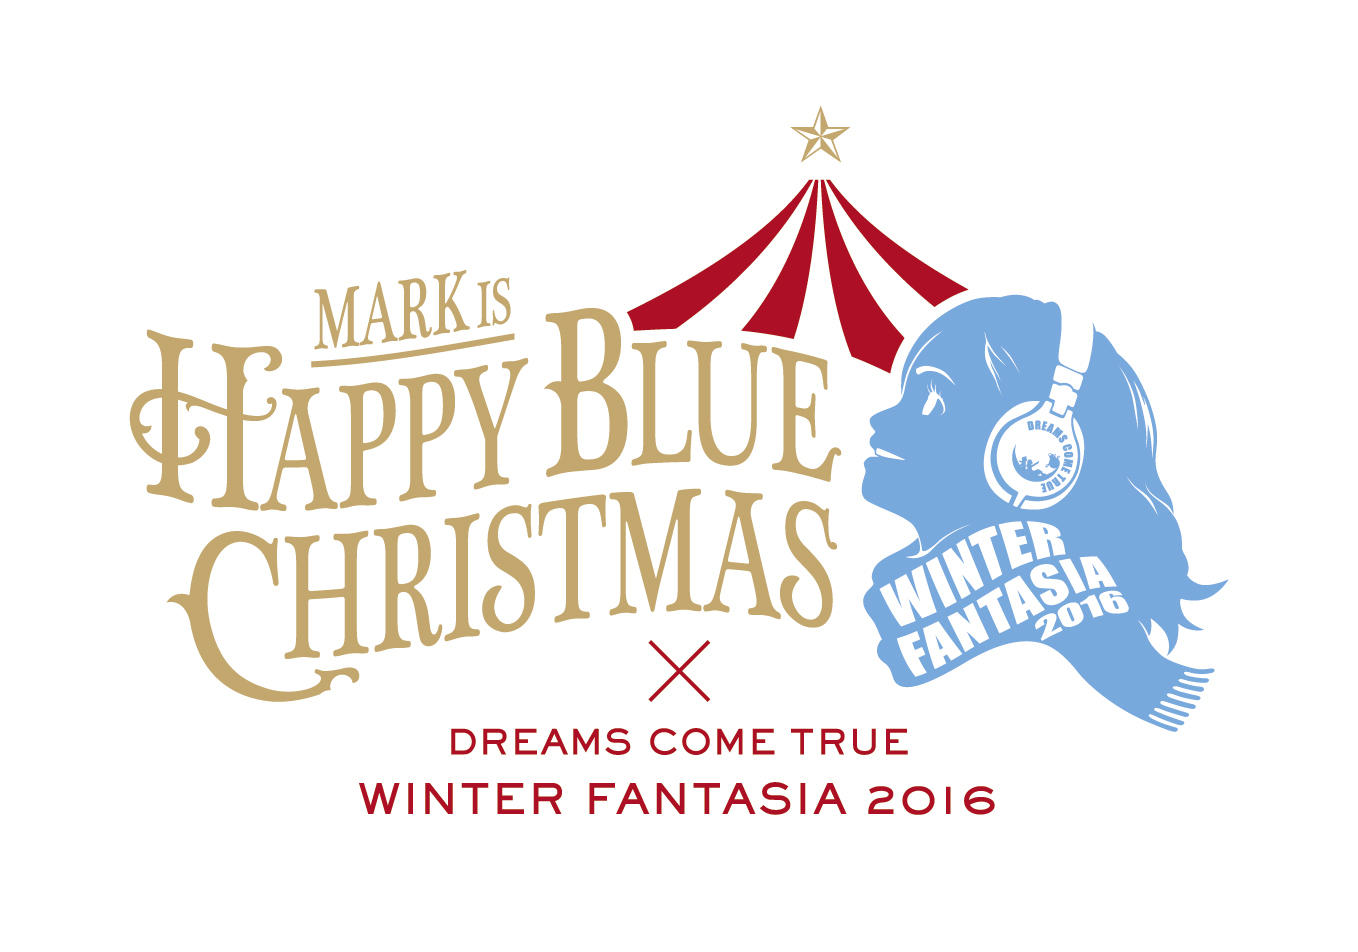 MARK IS Happy Blue Christmas × DREAMS COME TRUE WINTER FANTASIA 2016